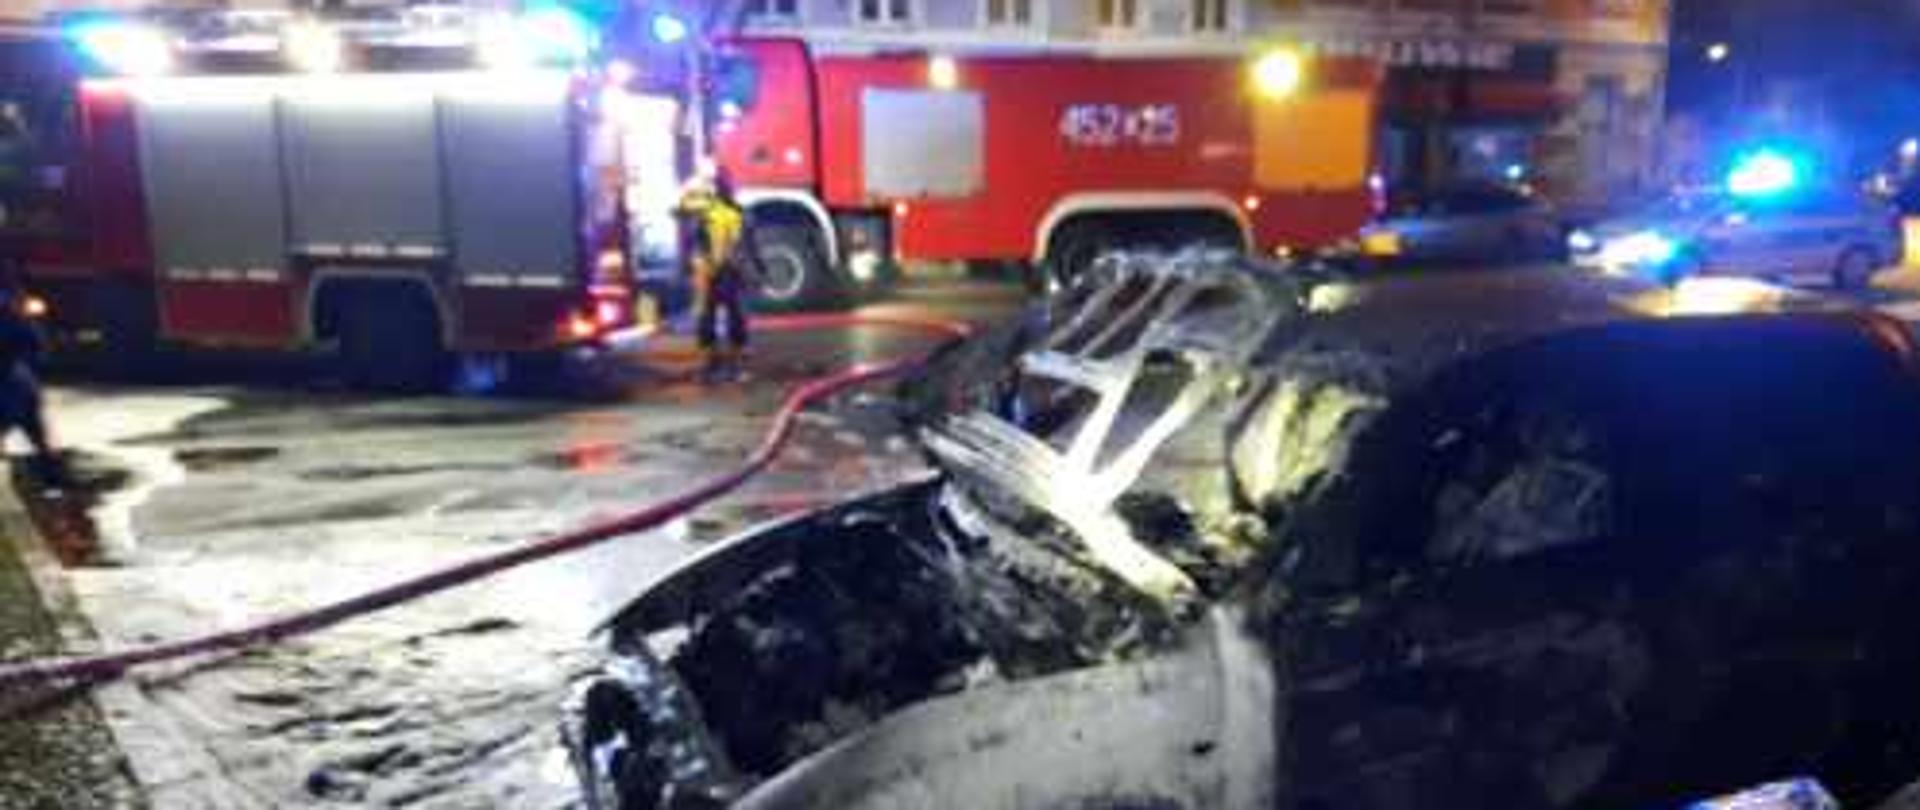 Na parkingu w centrum Lubska powstał pożar od zwarcia instalacji w komorze silnika samochodu. W tle widać strażacki samochód gaśniczy i wrak spalonego samochodu. Pożar powstał w godzinach nocnych.